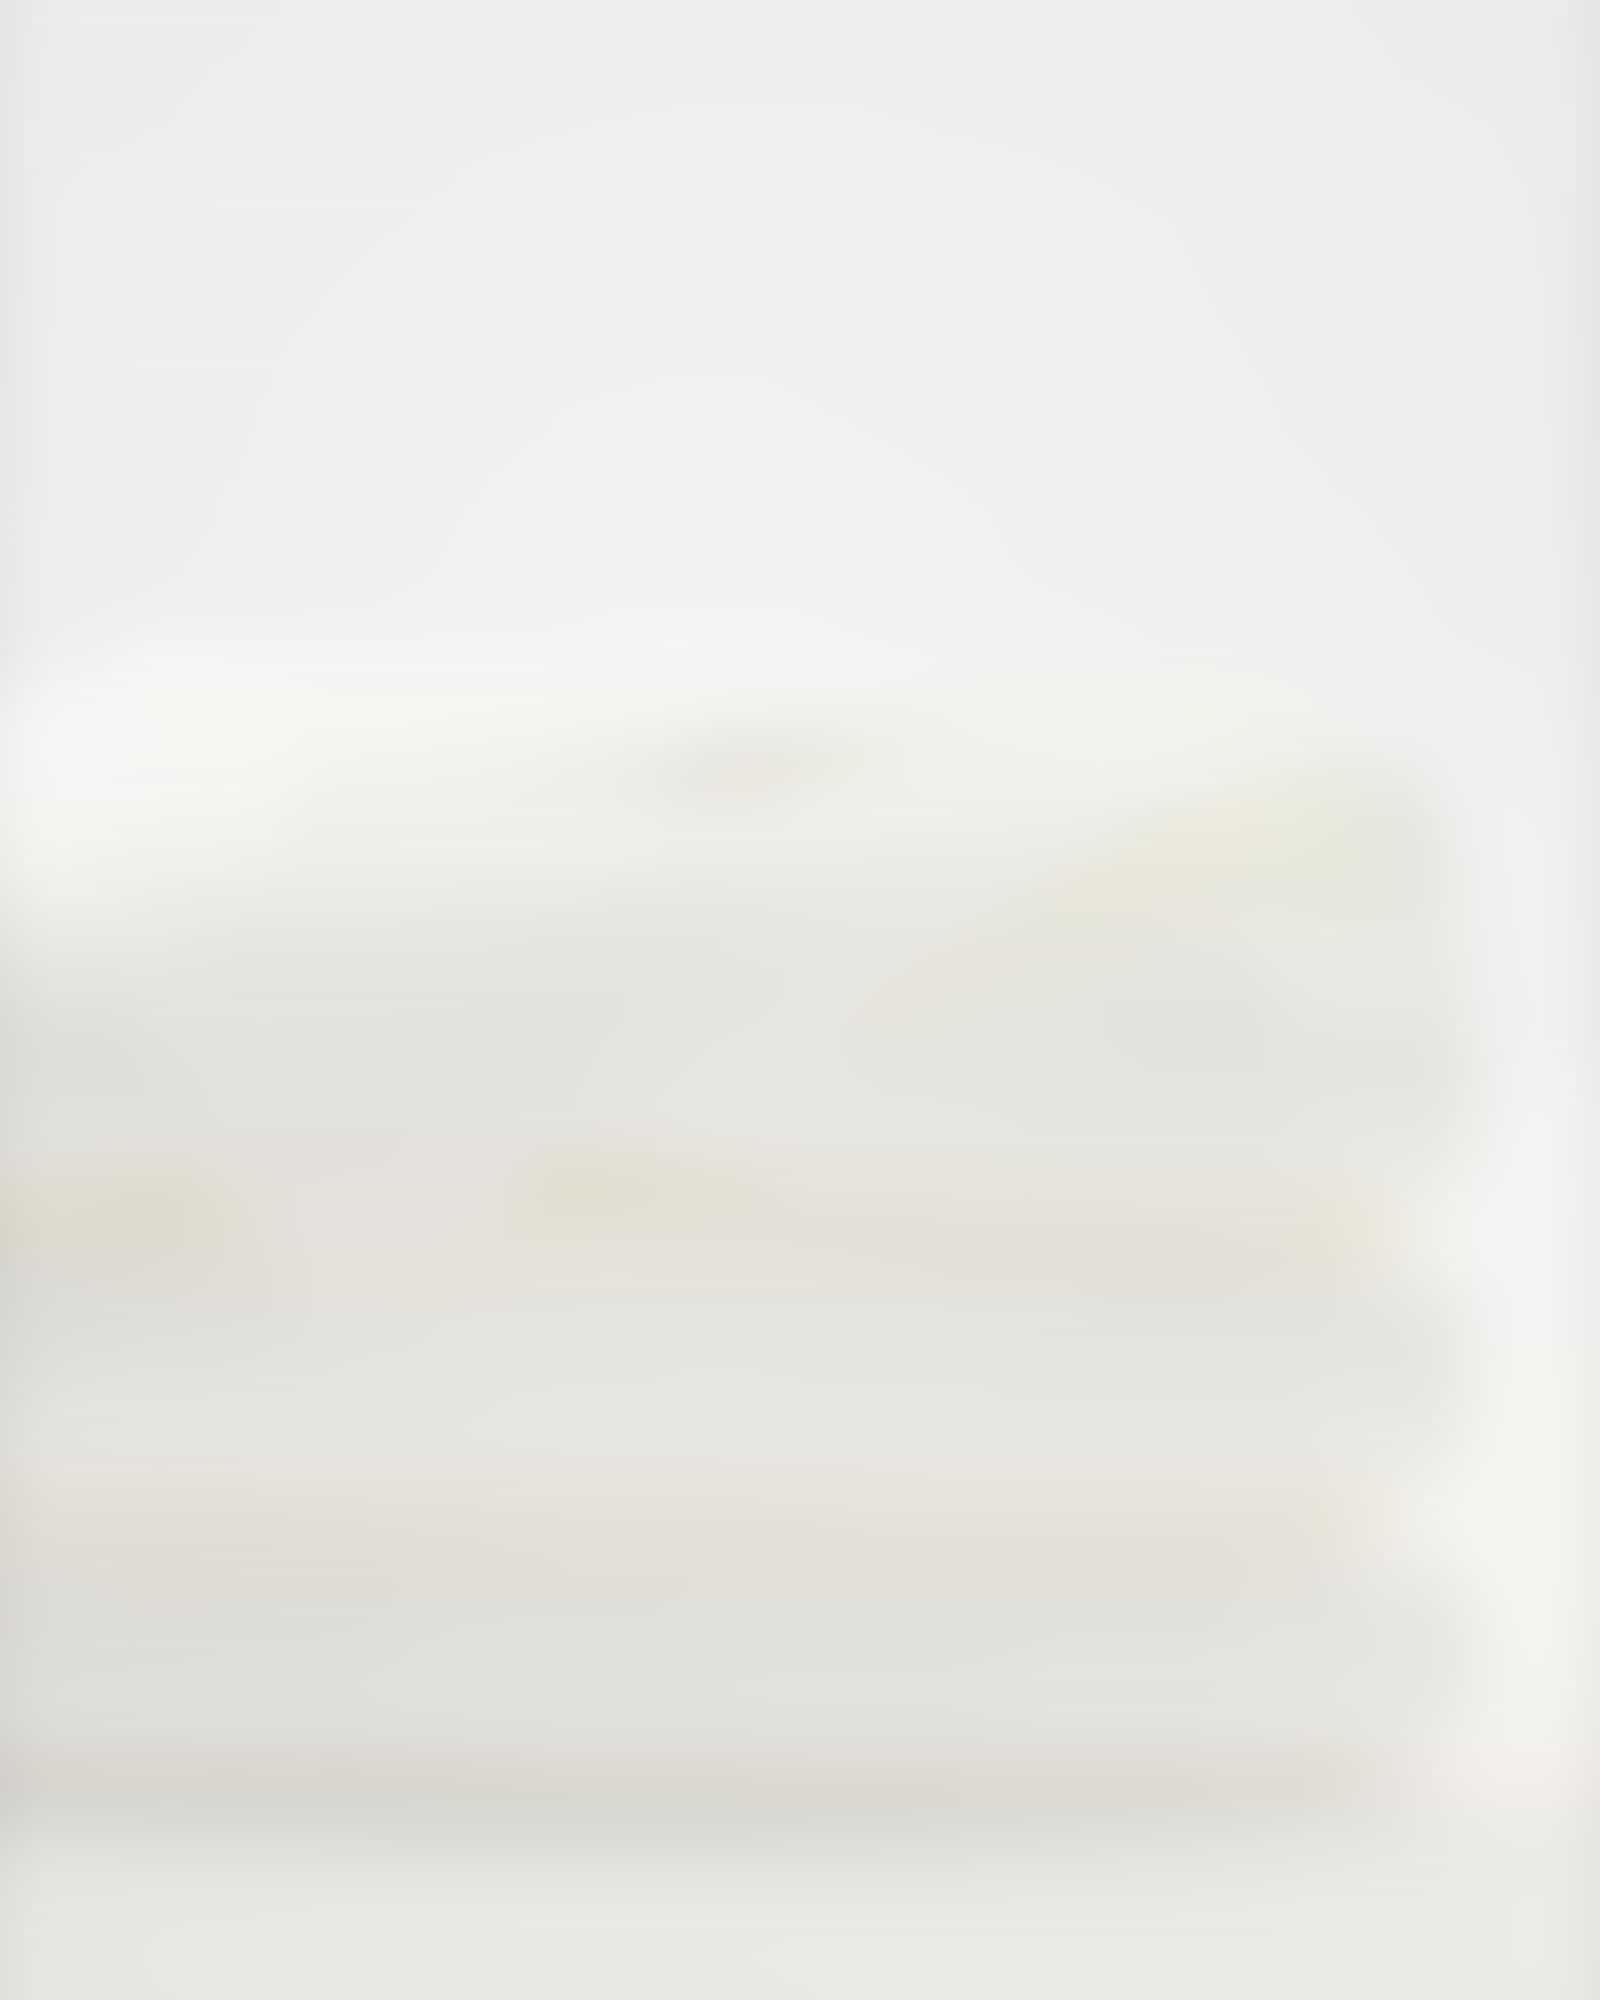 Möve - Superwuschel - Farbe: snow - 001 (0-1725/8775) - Handtuch 60x110 cm Detailbild 2